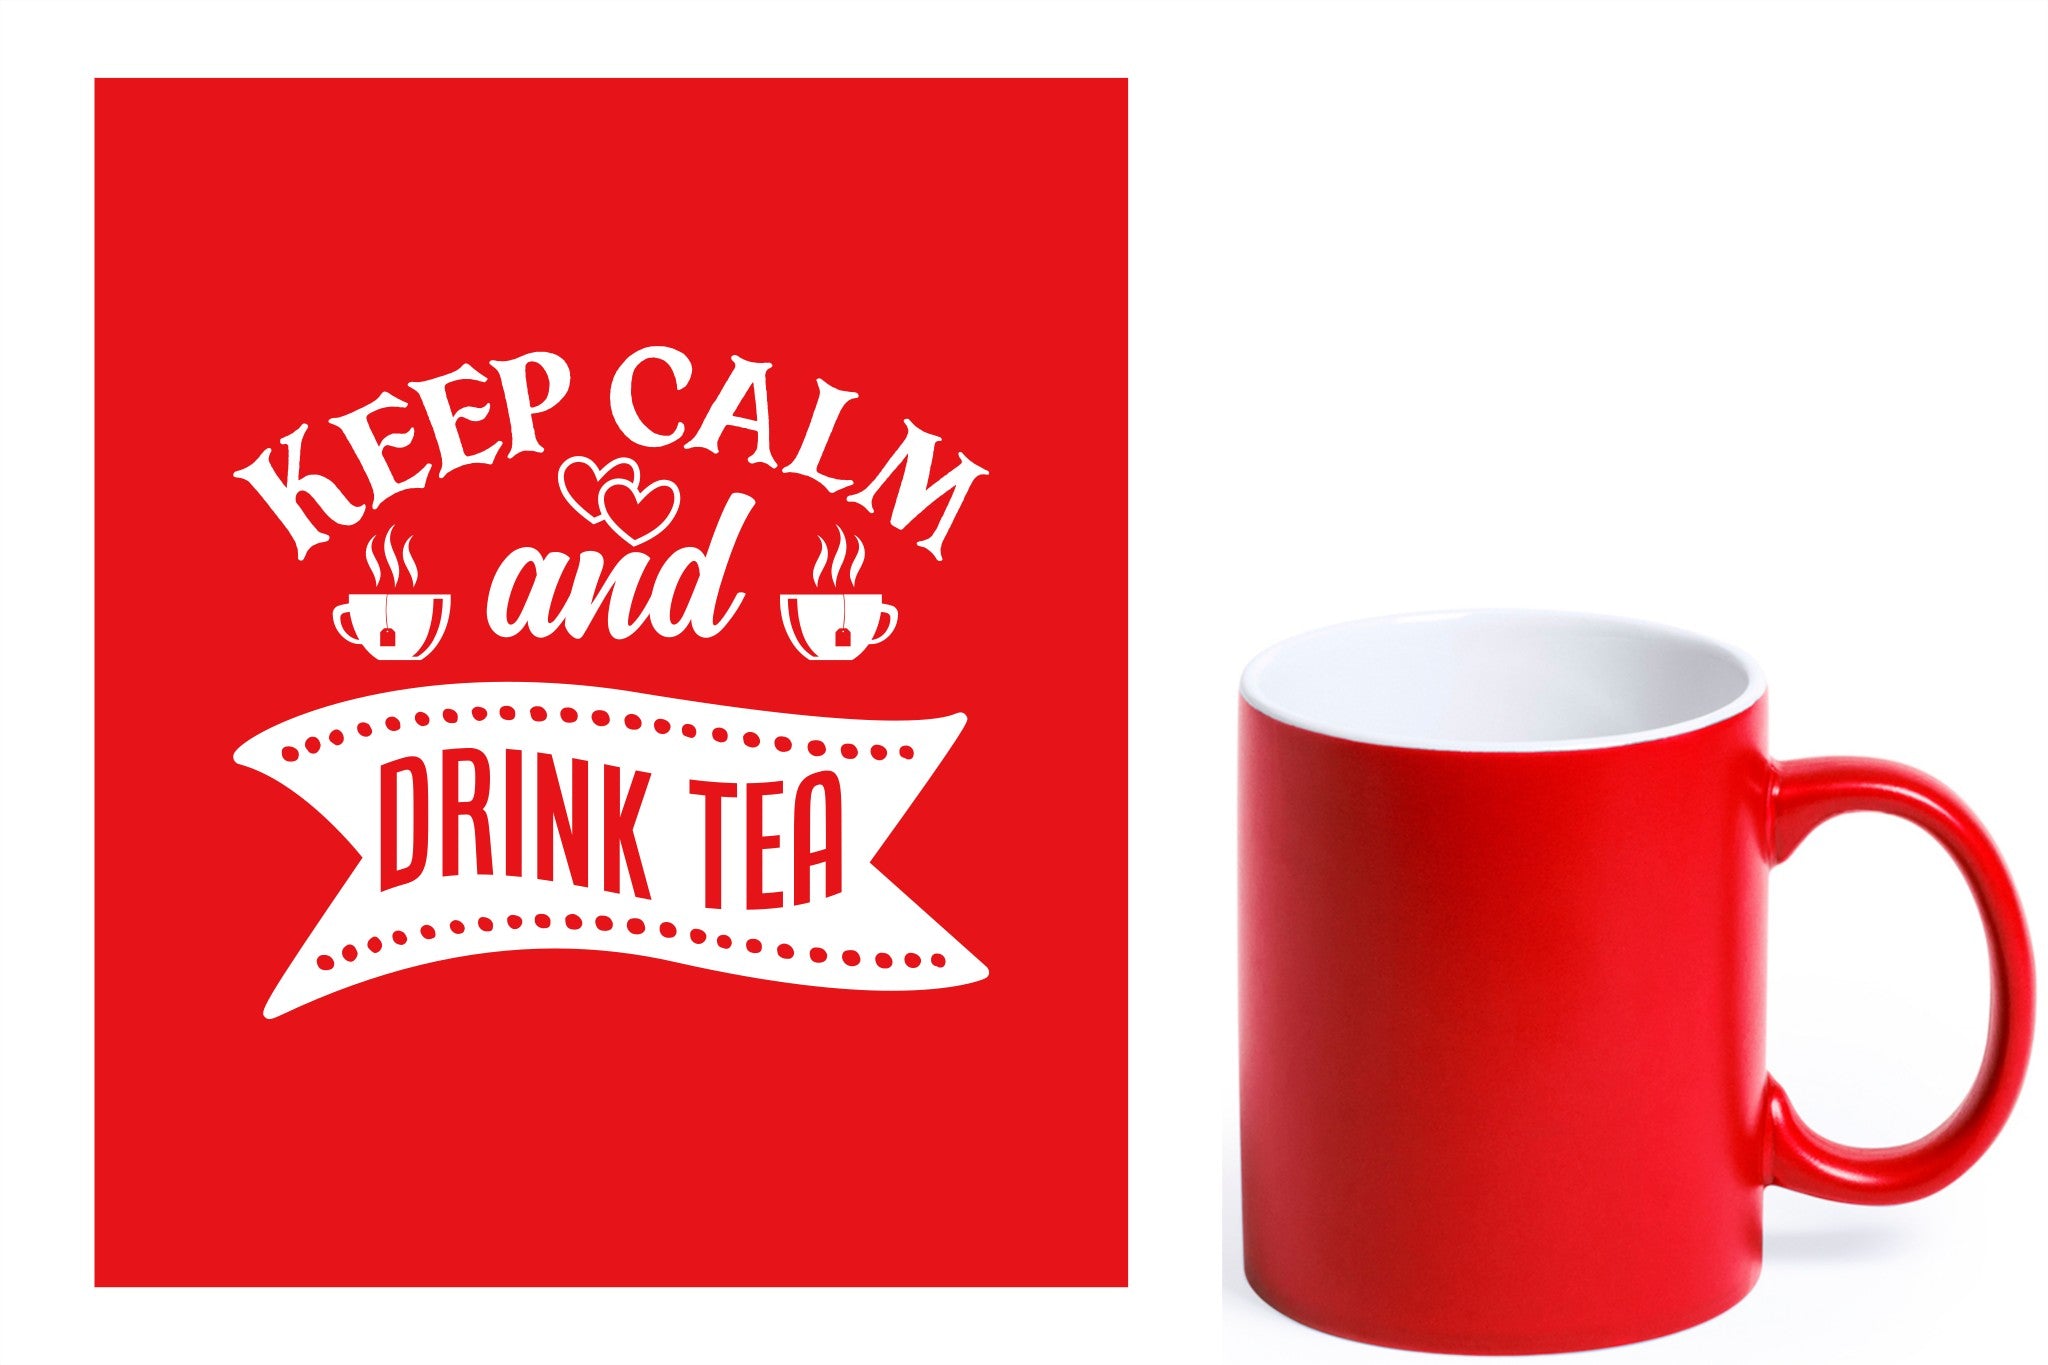 rode keramische mok met witte gravure  'Keep calm and drink tea'.